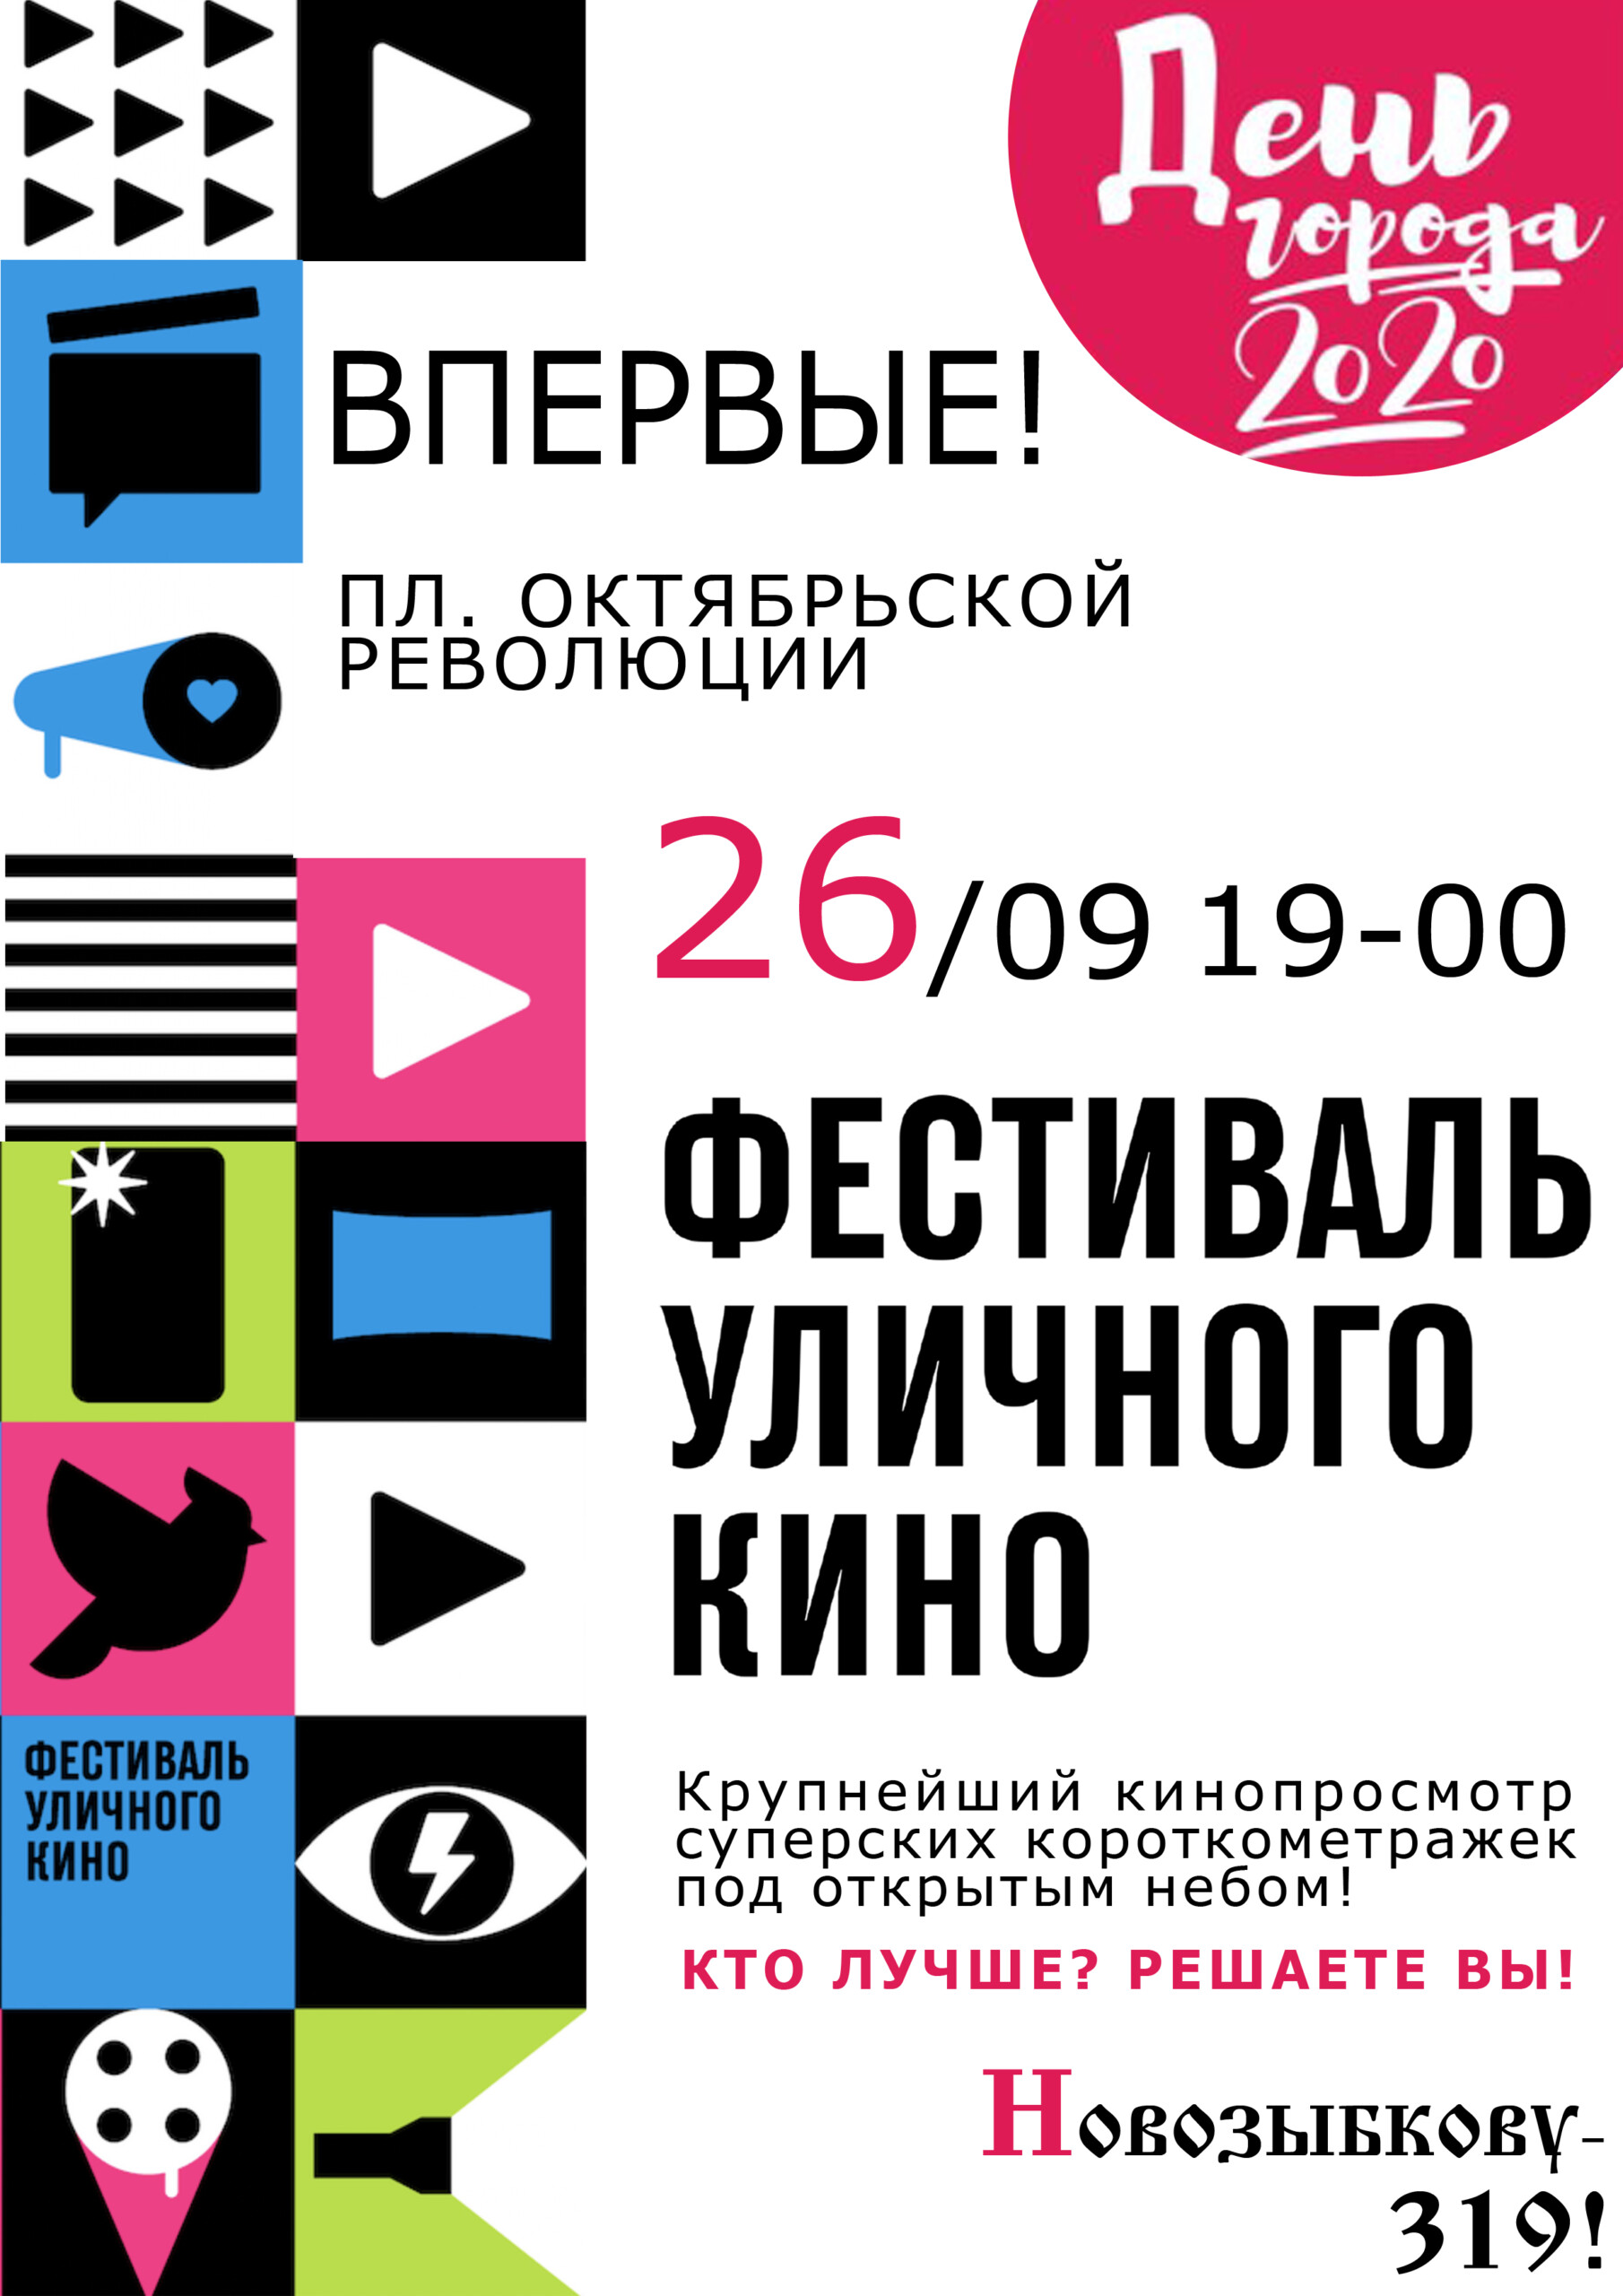 «Фестиваль уличного кино» пройдет в Новозыбкове в День города